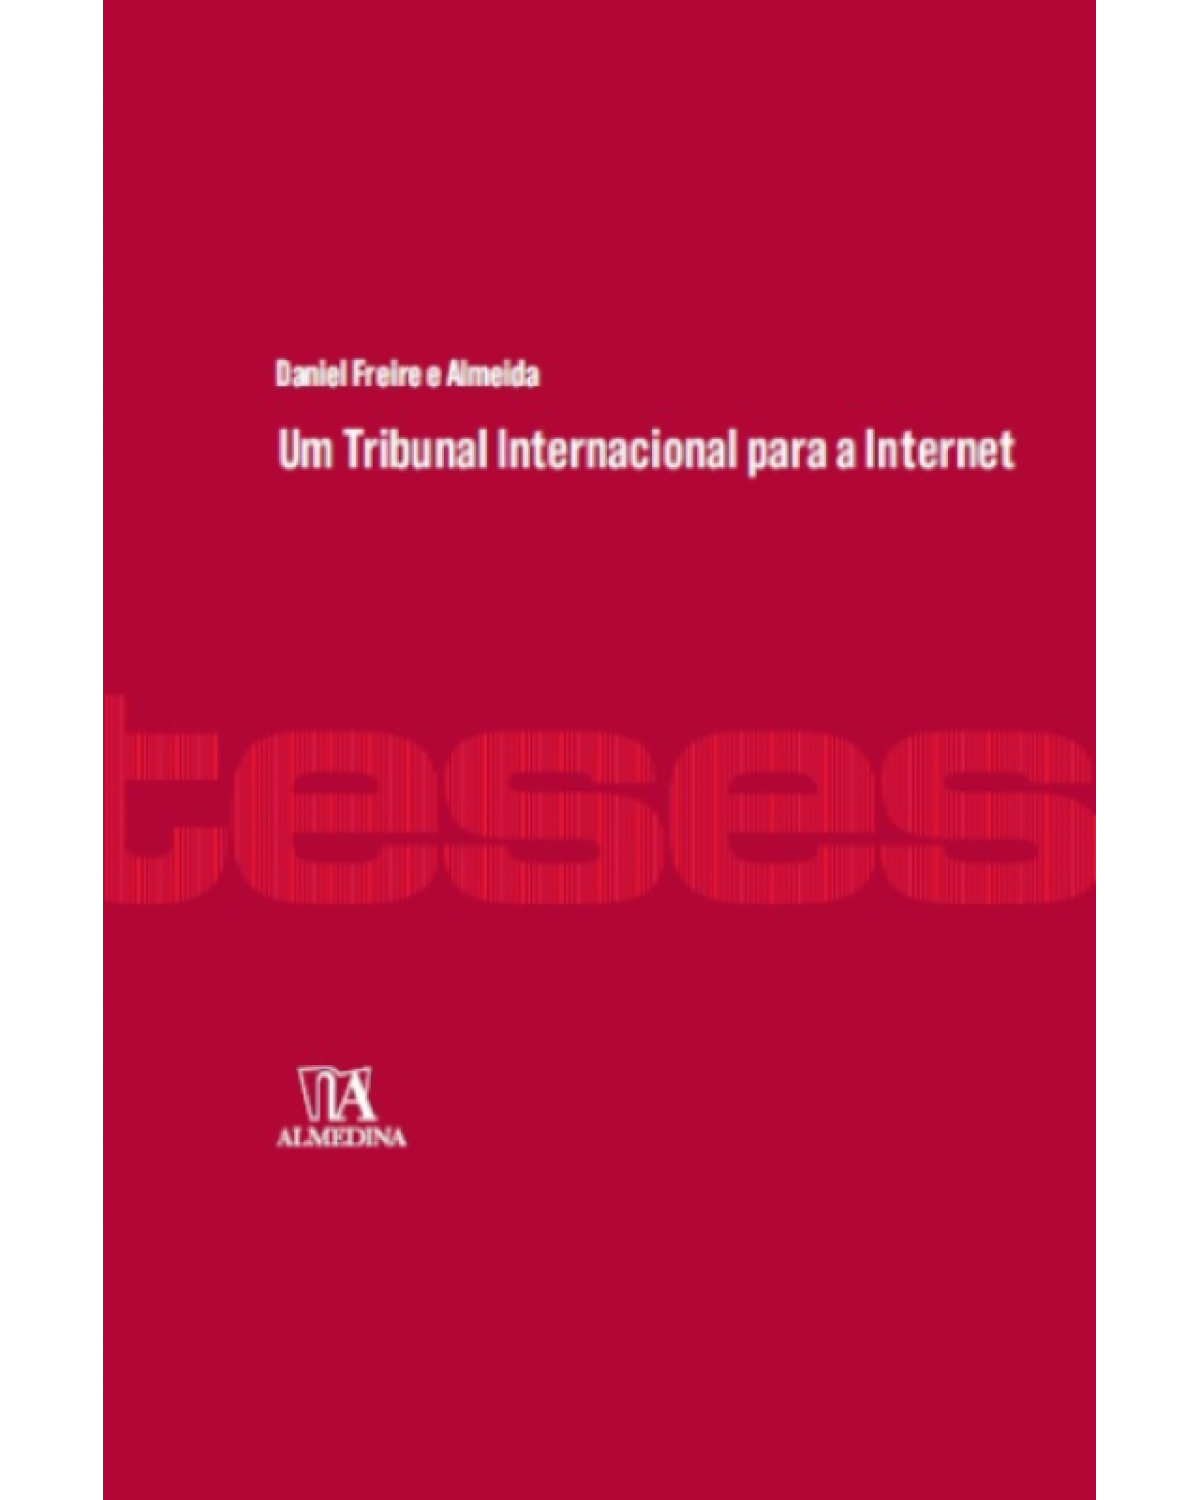 Um tribunal internacional para a internet